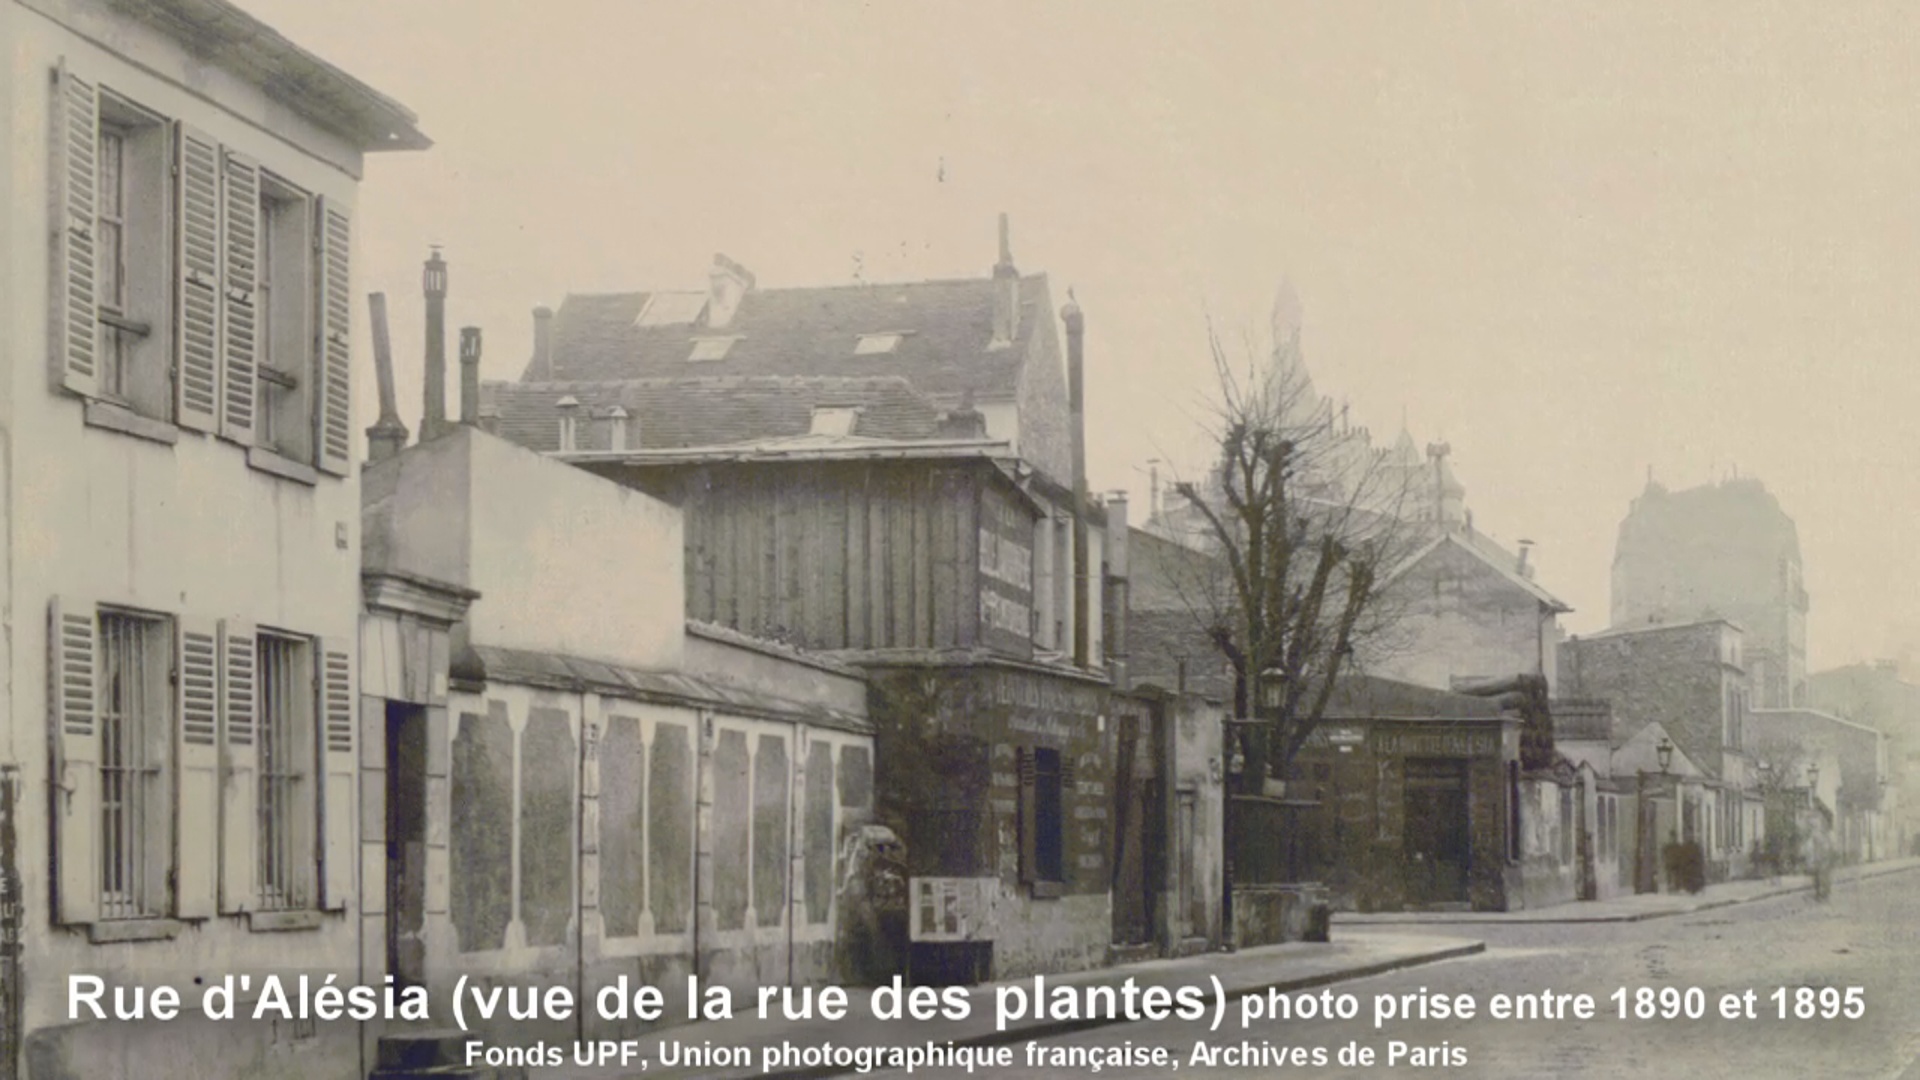 Plaisance près Montparnasse. Quartier parisien, 1840-1985